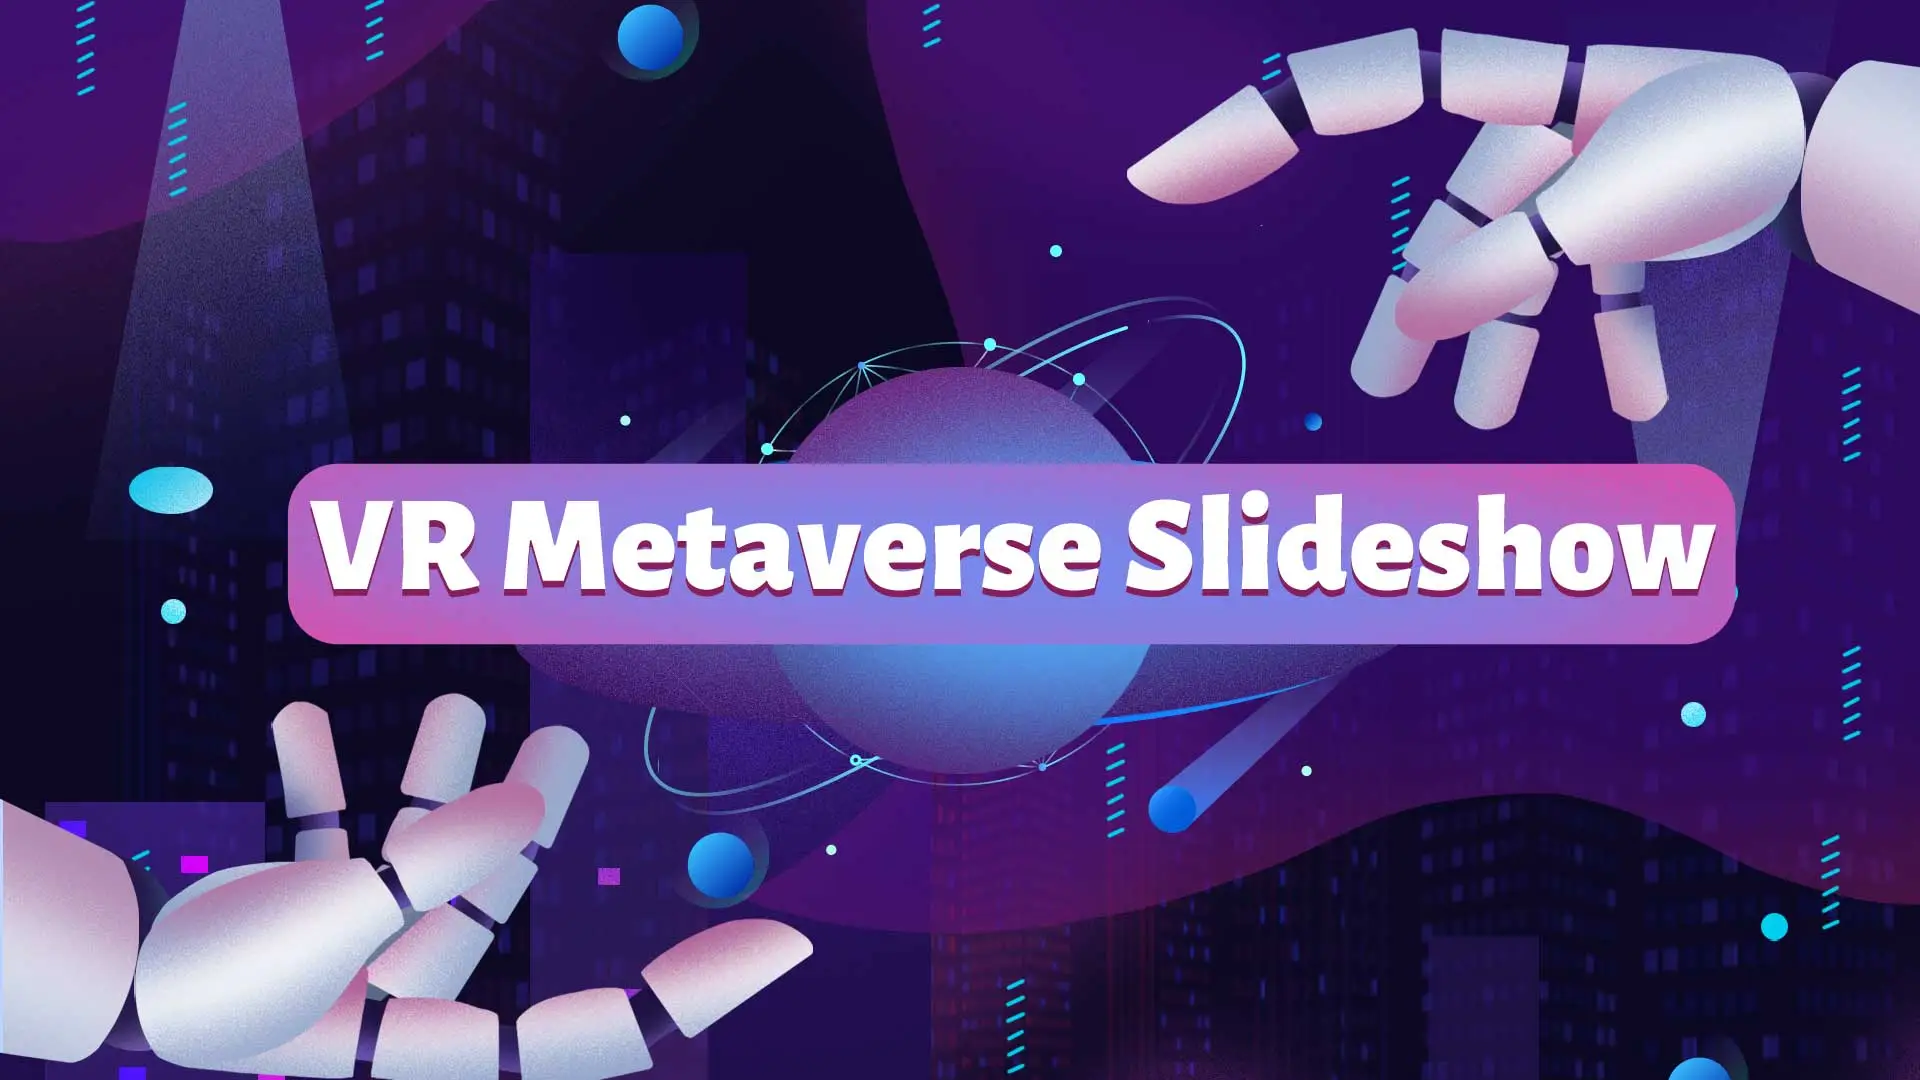 VR Metaverse Slideshow